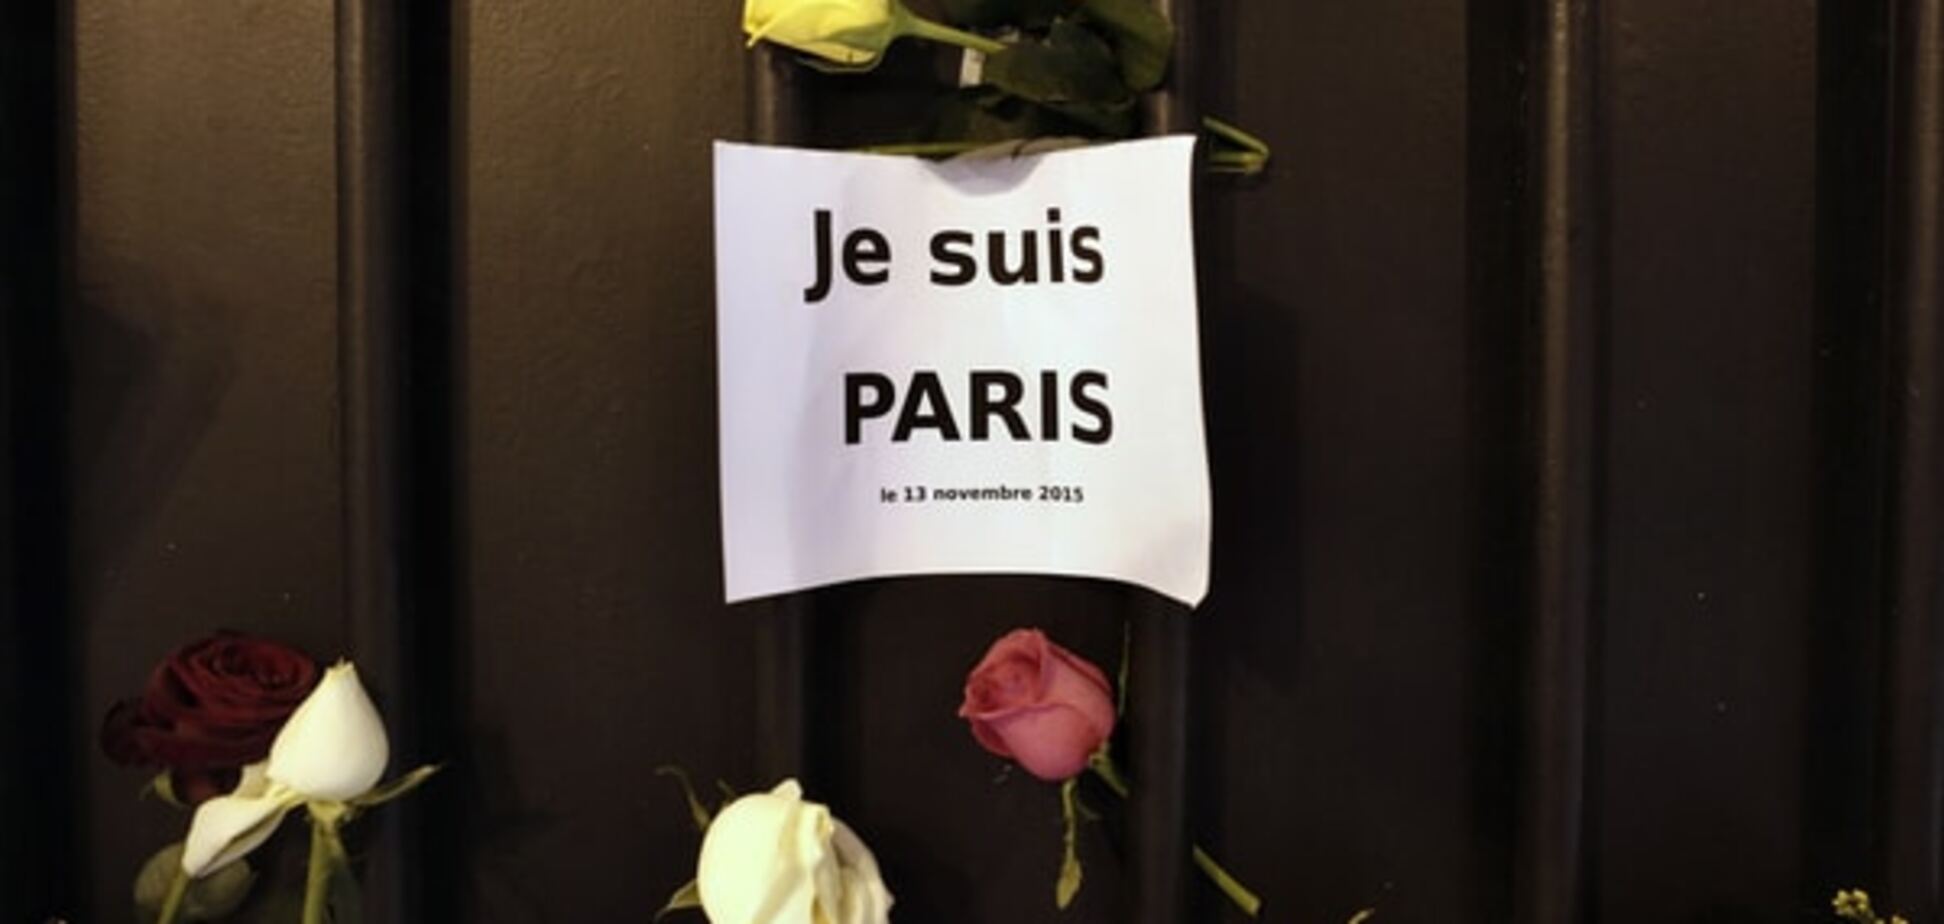 За организатором терактов в Париже следили еще до совершения атак - СМИ